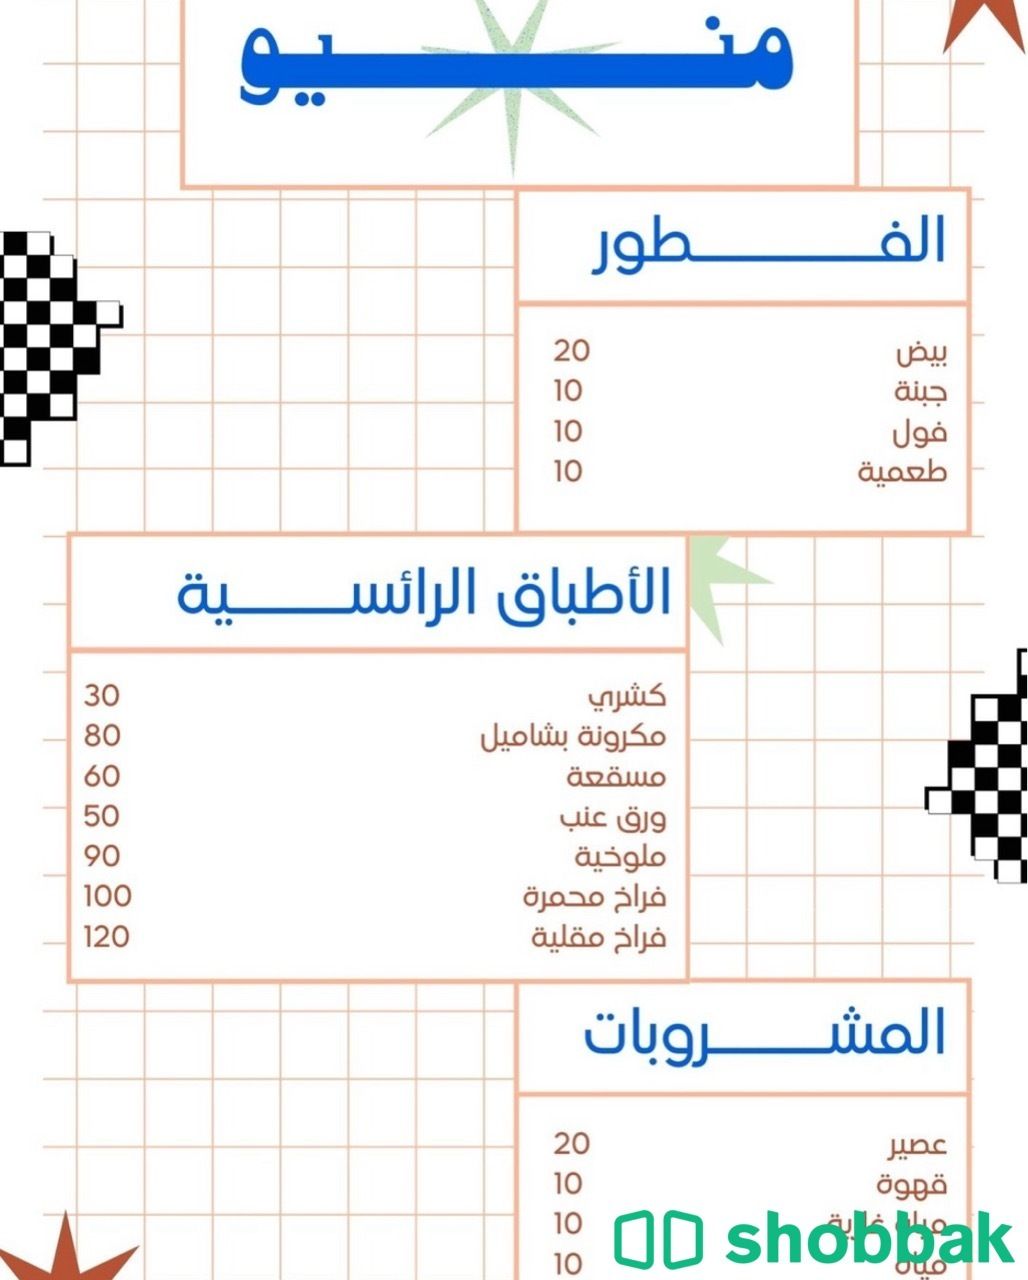 تصميم شعارات و لوقو و قوائم Shobbak Saudi Arabia